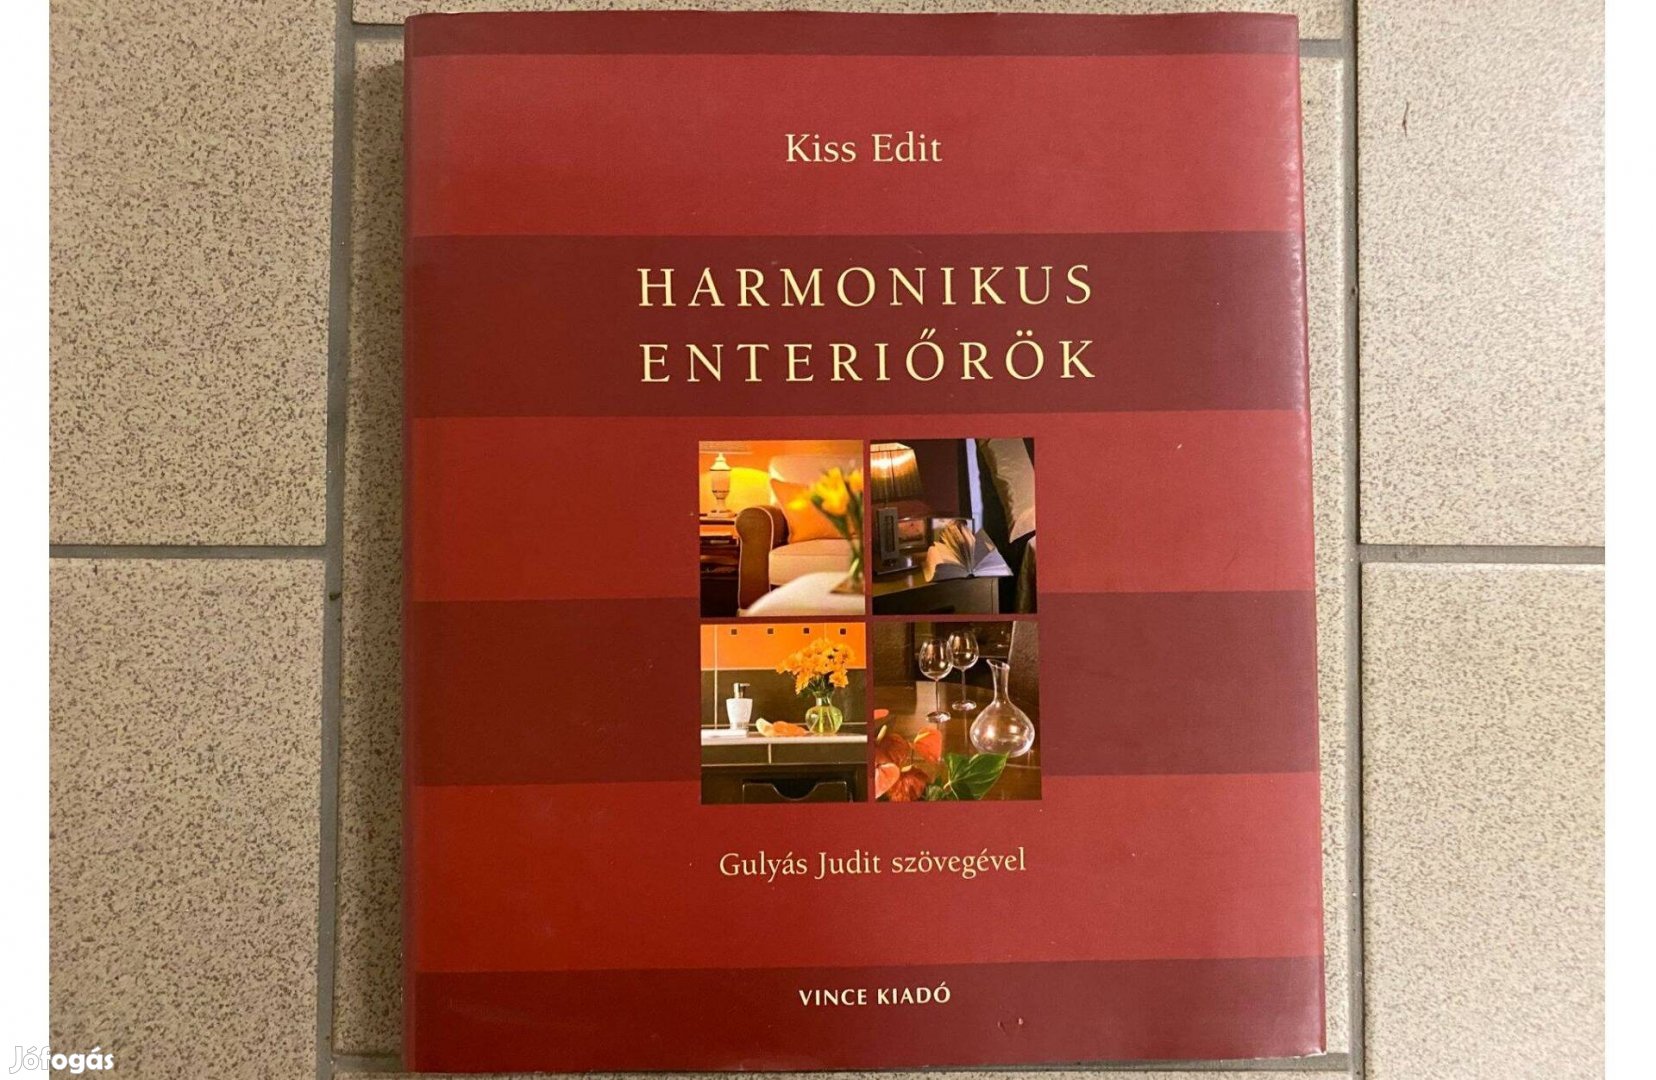 Eladó könyv: Kiss Edit: Harmonikus enteriőrök